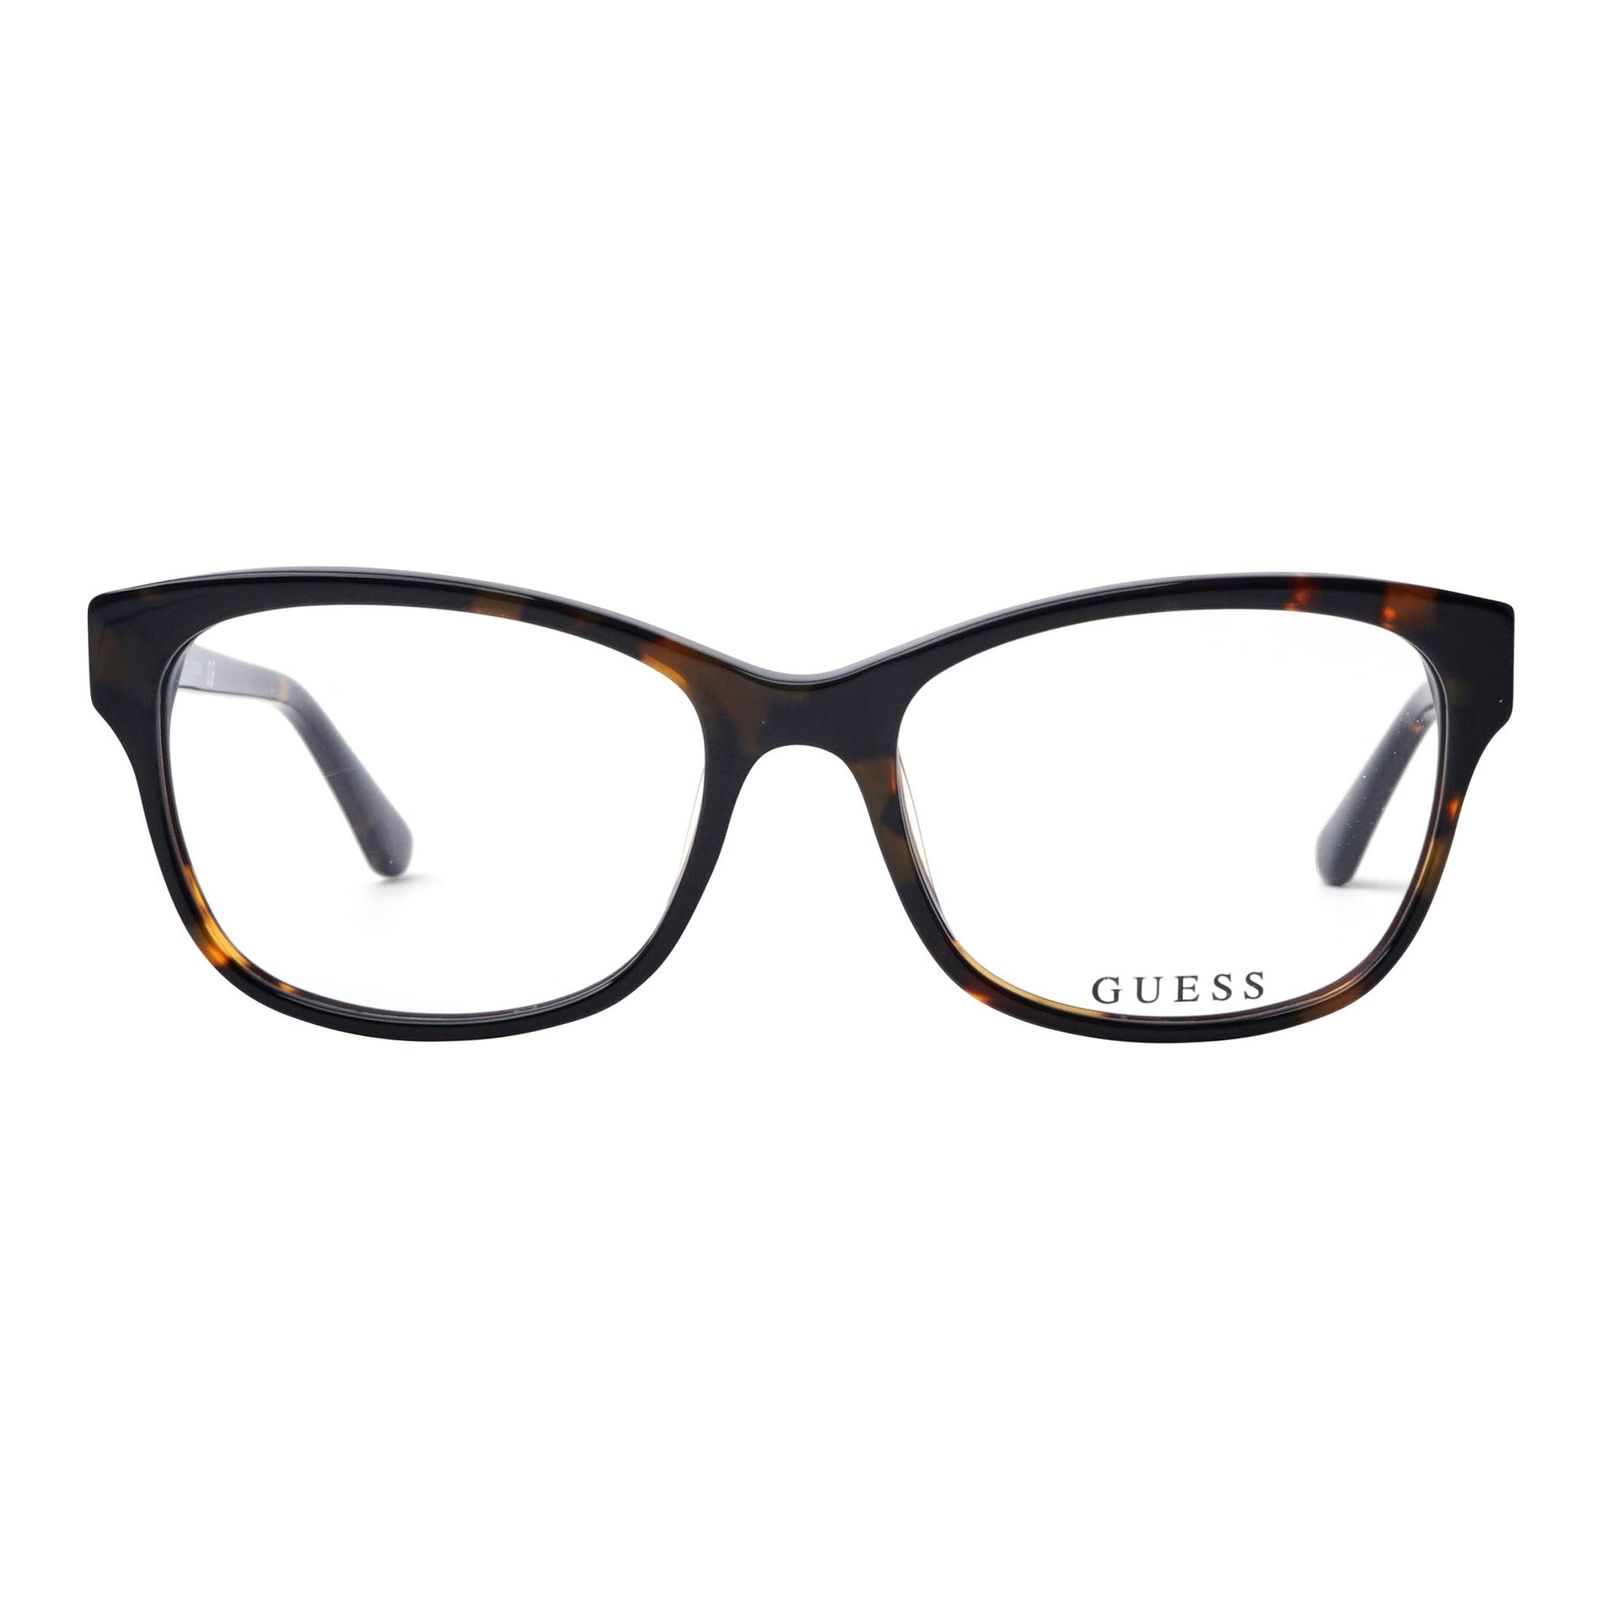 فریم عینک طبی زنانه گس مدل GU249605254 -  - 2